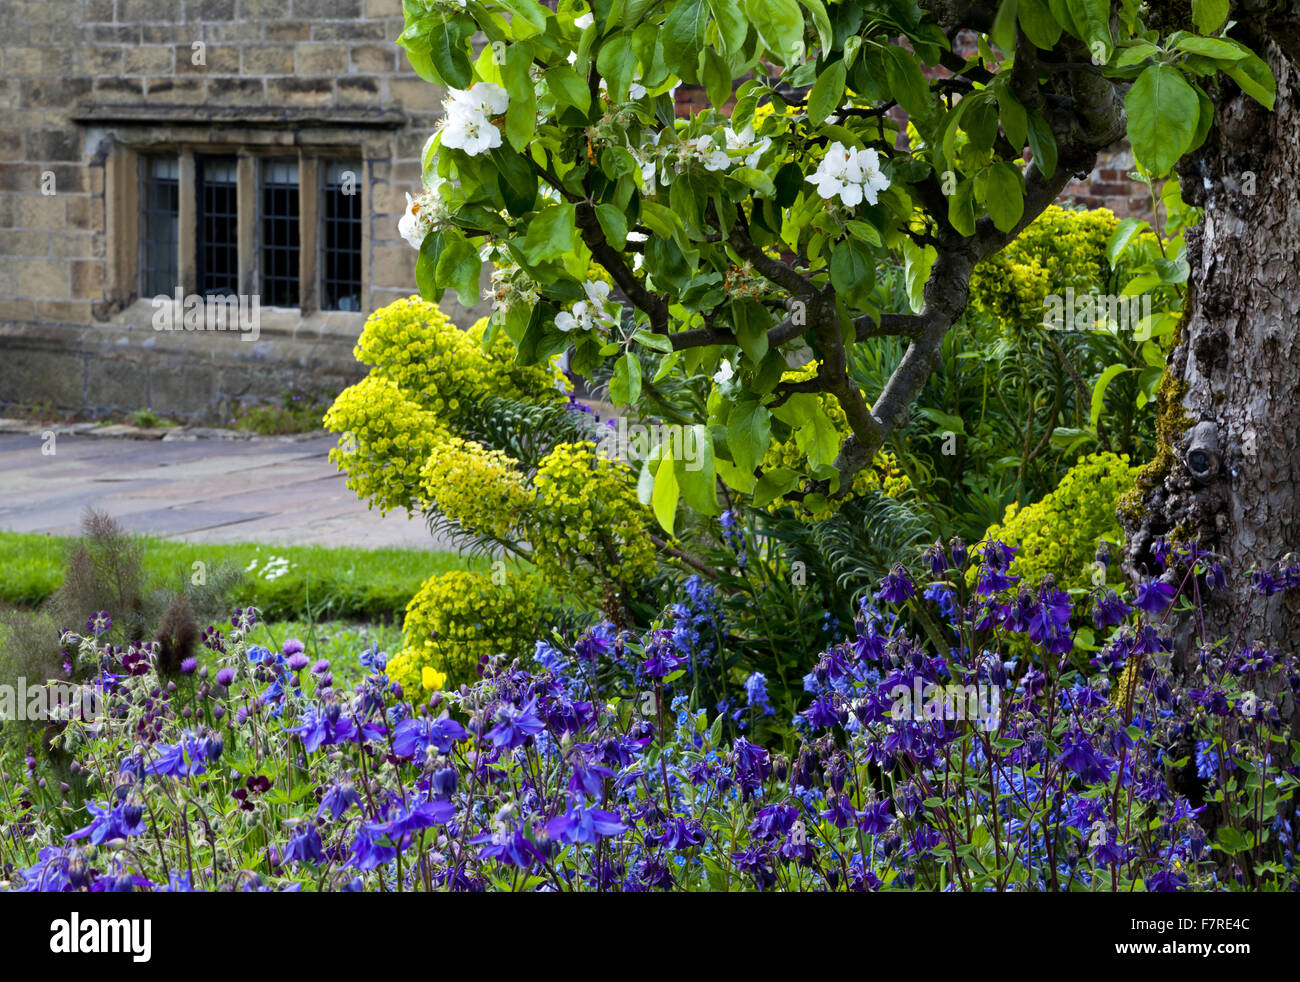 Le jardin au printemps à Eyam Hall et centre d'Artisanat, Derbyshire. Eyam Hall est un exemple d'un manoir Jacobin pierre meulière, situé dans un jardin clos. Banque D'Images